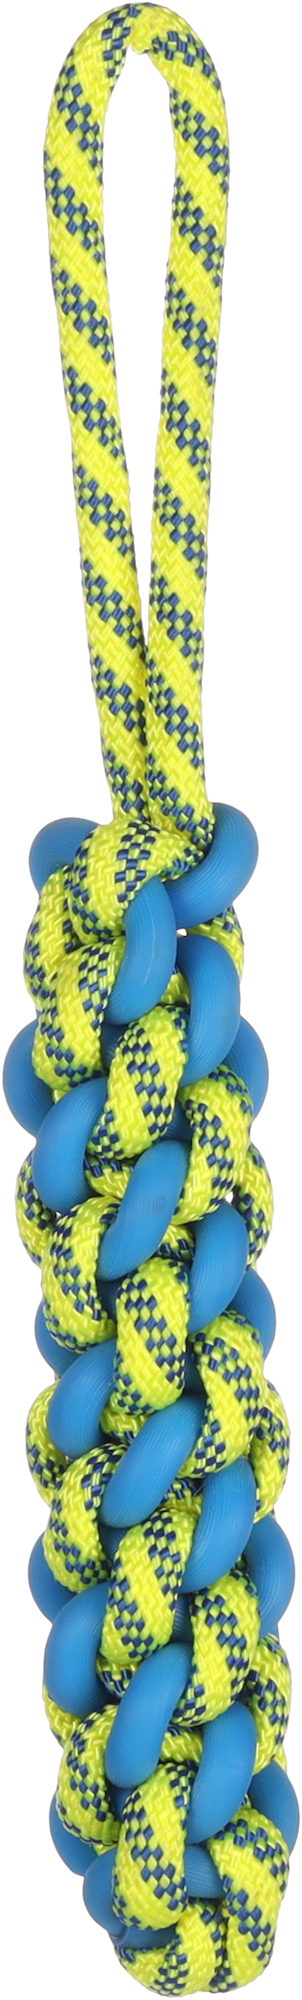 Juguete para perro Tofla palo para tirar azul/amarillo de caucho y nylon resistente